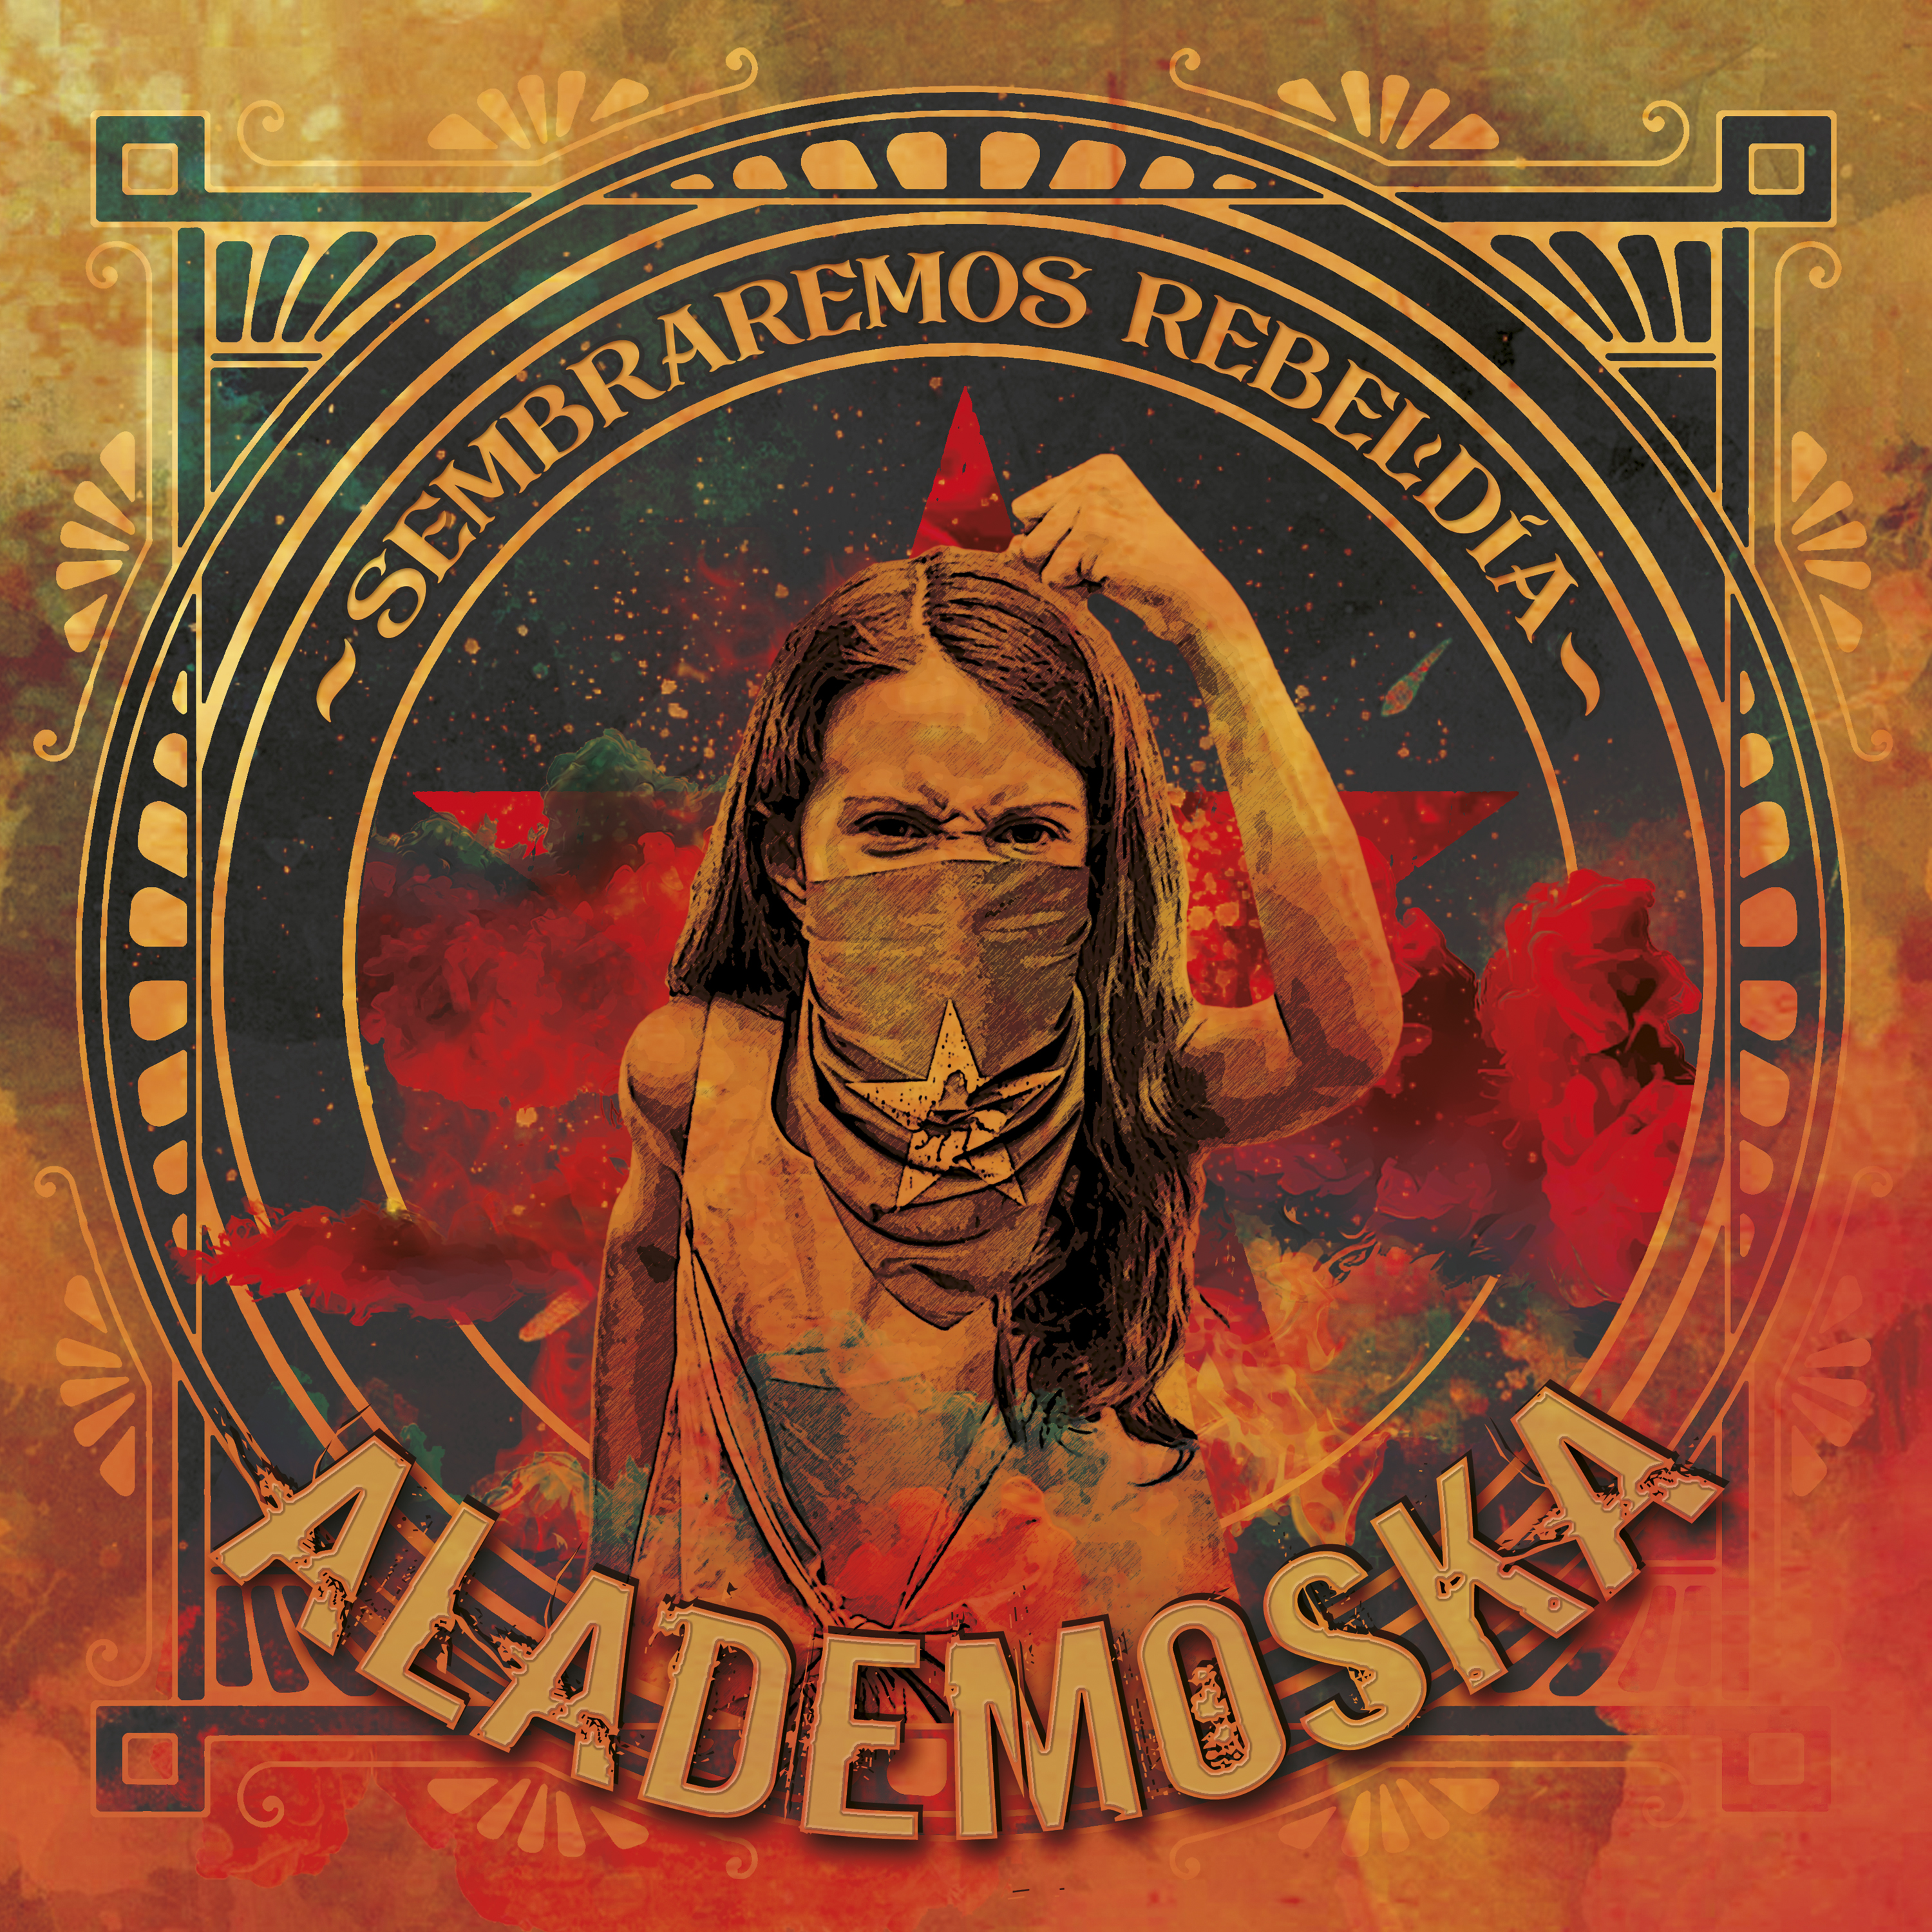 [Reseña] “Sembraremos Rebeldía” el nuevo disco de AlaDeMoska